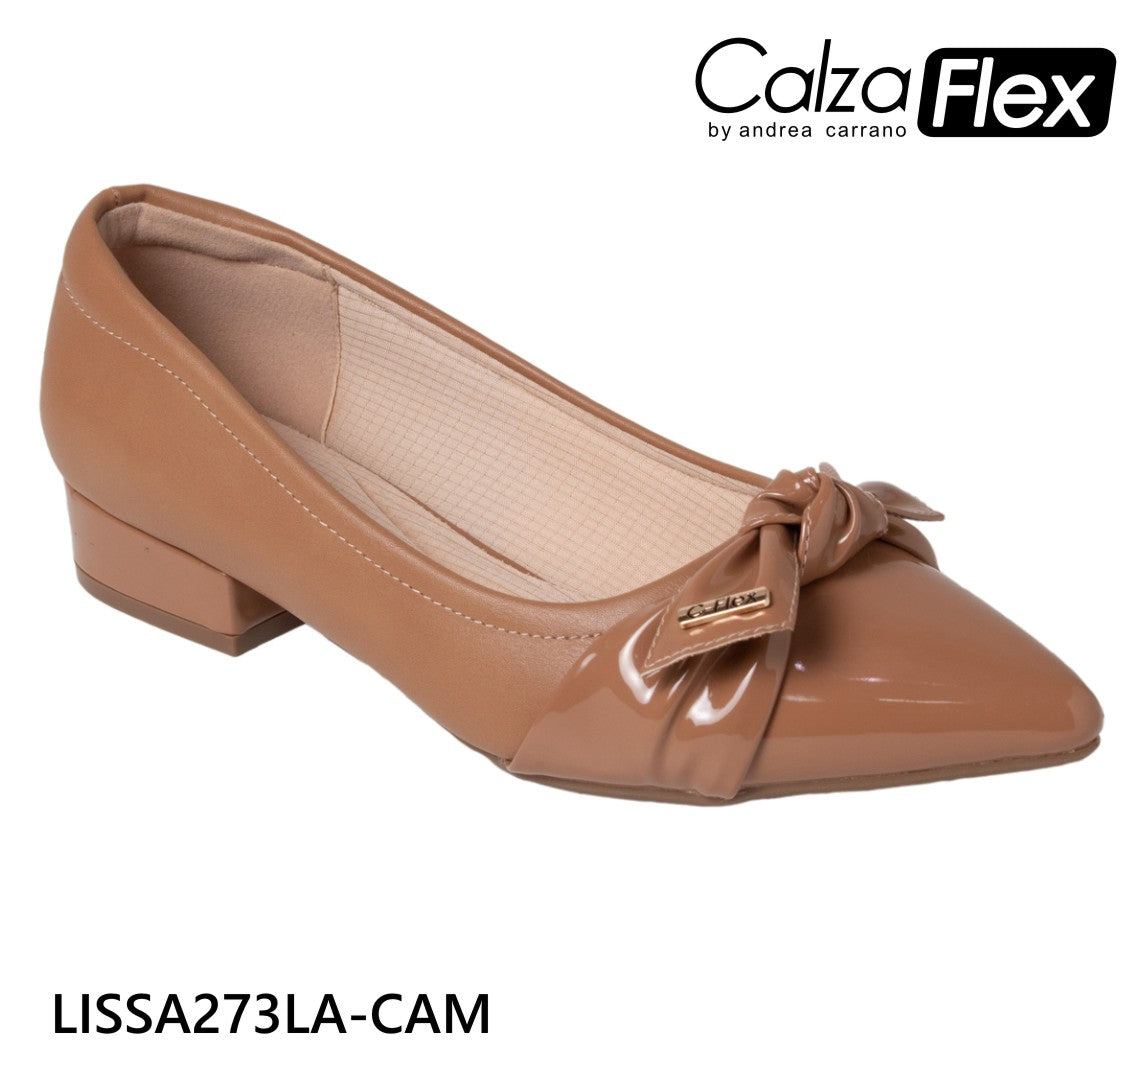 zapatos-calzaflex-lissa-p-damas-30